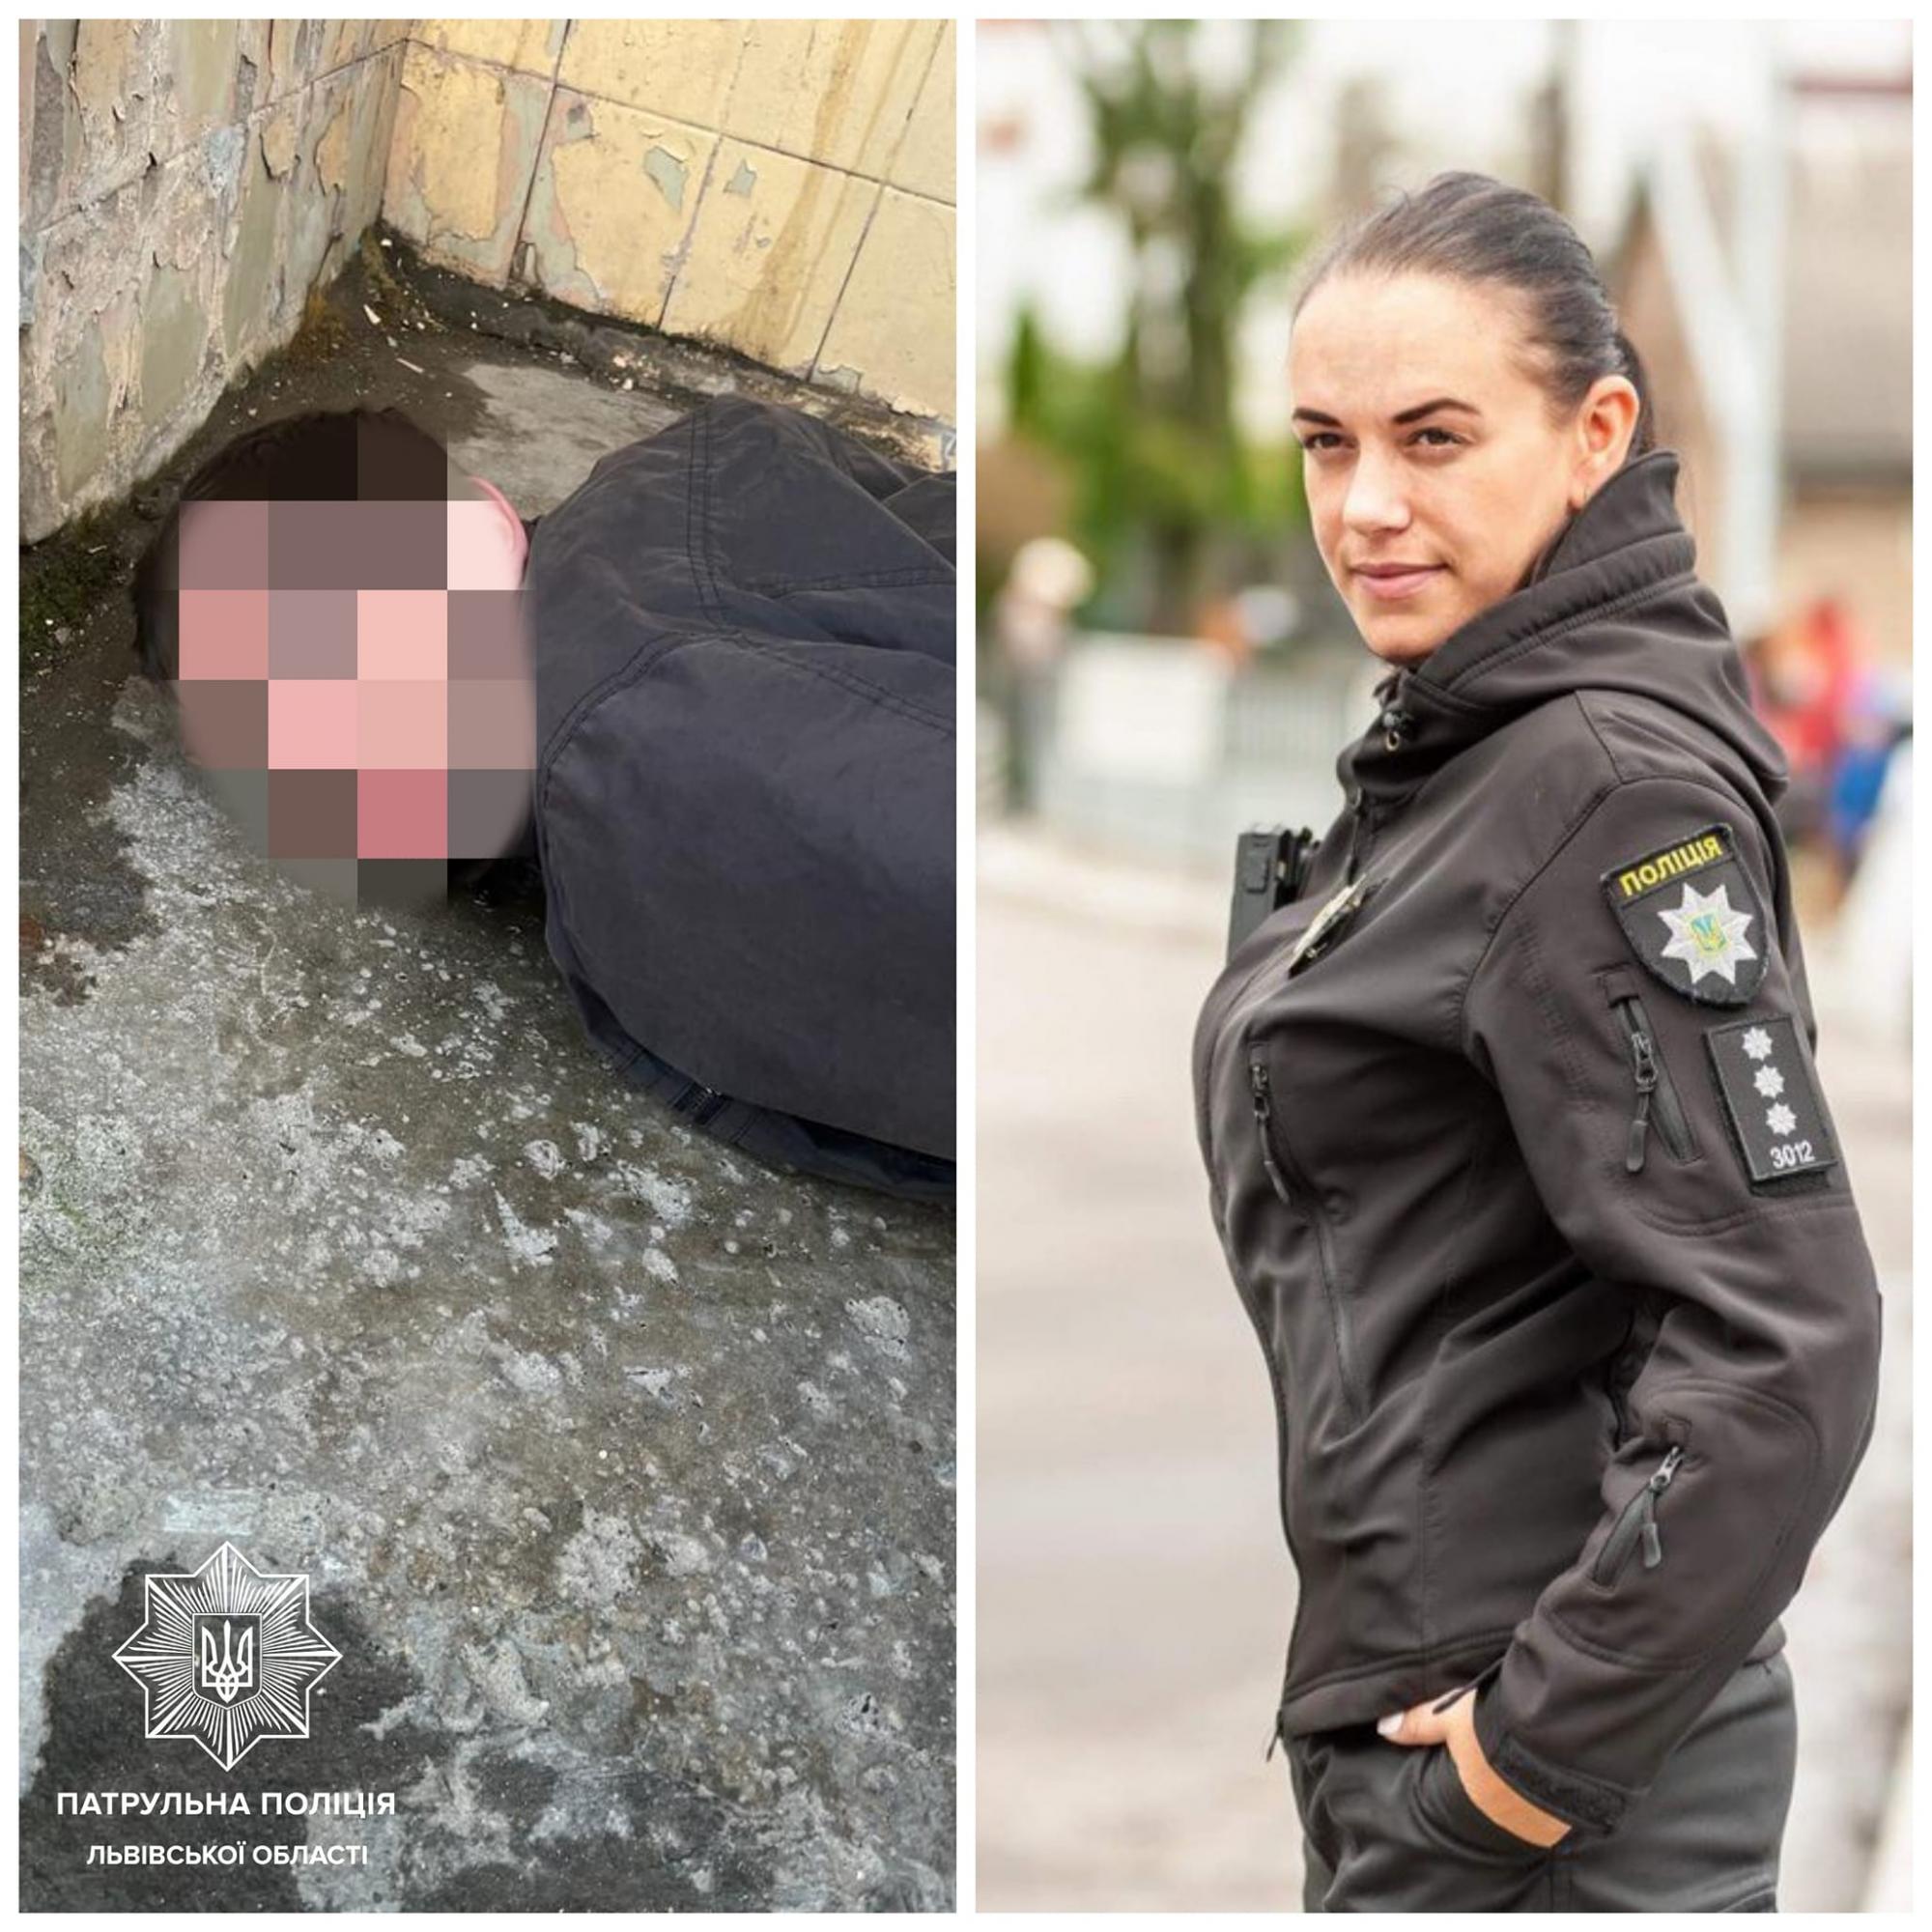 У Львові поліцейська у декретній відпустці допомогла затримати вбивцю: що вона зробила